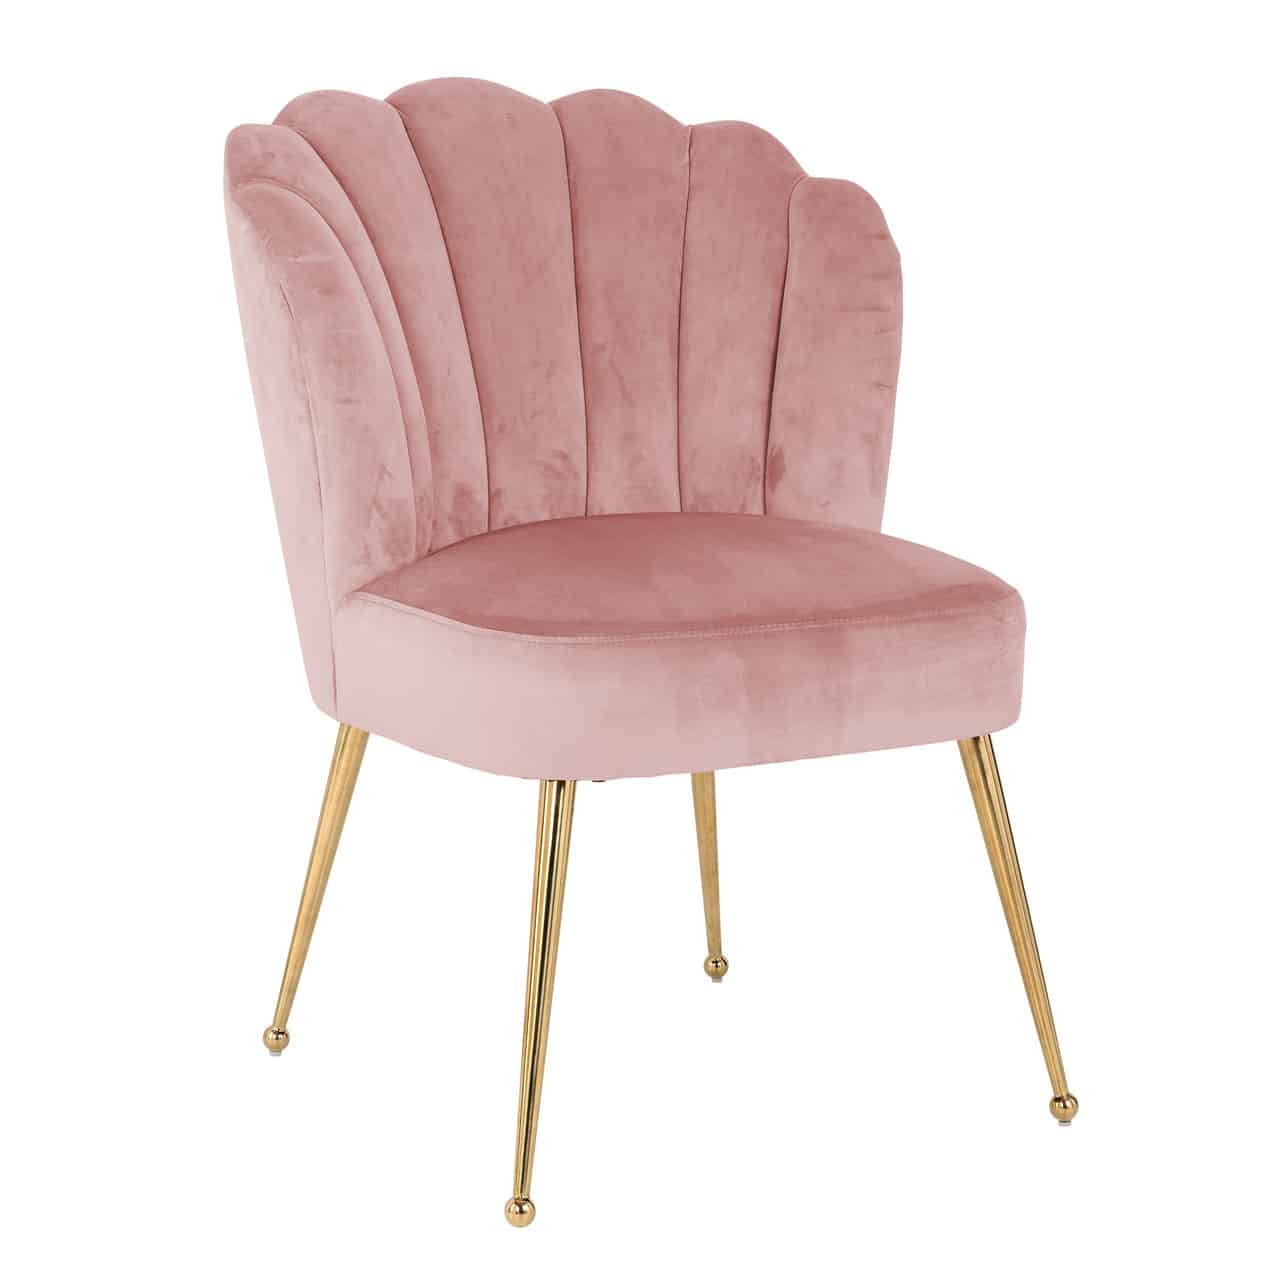 Stuhl aus rosa Samt, Sitzfläche und Rückenlehne dick gepolstert, oben mit leichter Rundung, sechs mal vertikal gesteppt; goldene Beine leicht nach außen gestellt, nach unten schmal zulaufend und mit einem Knopf versehen.